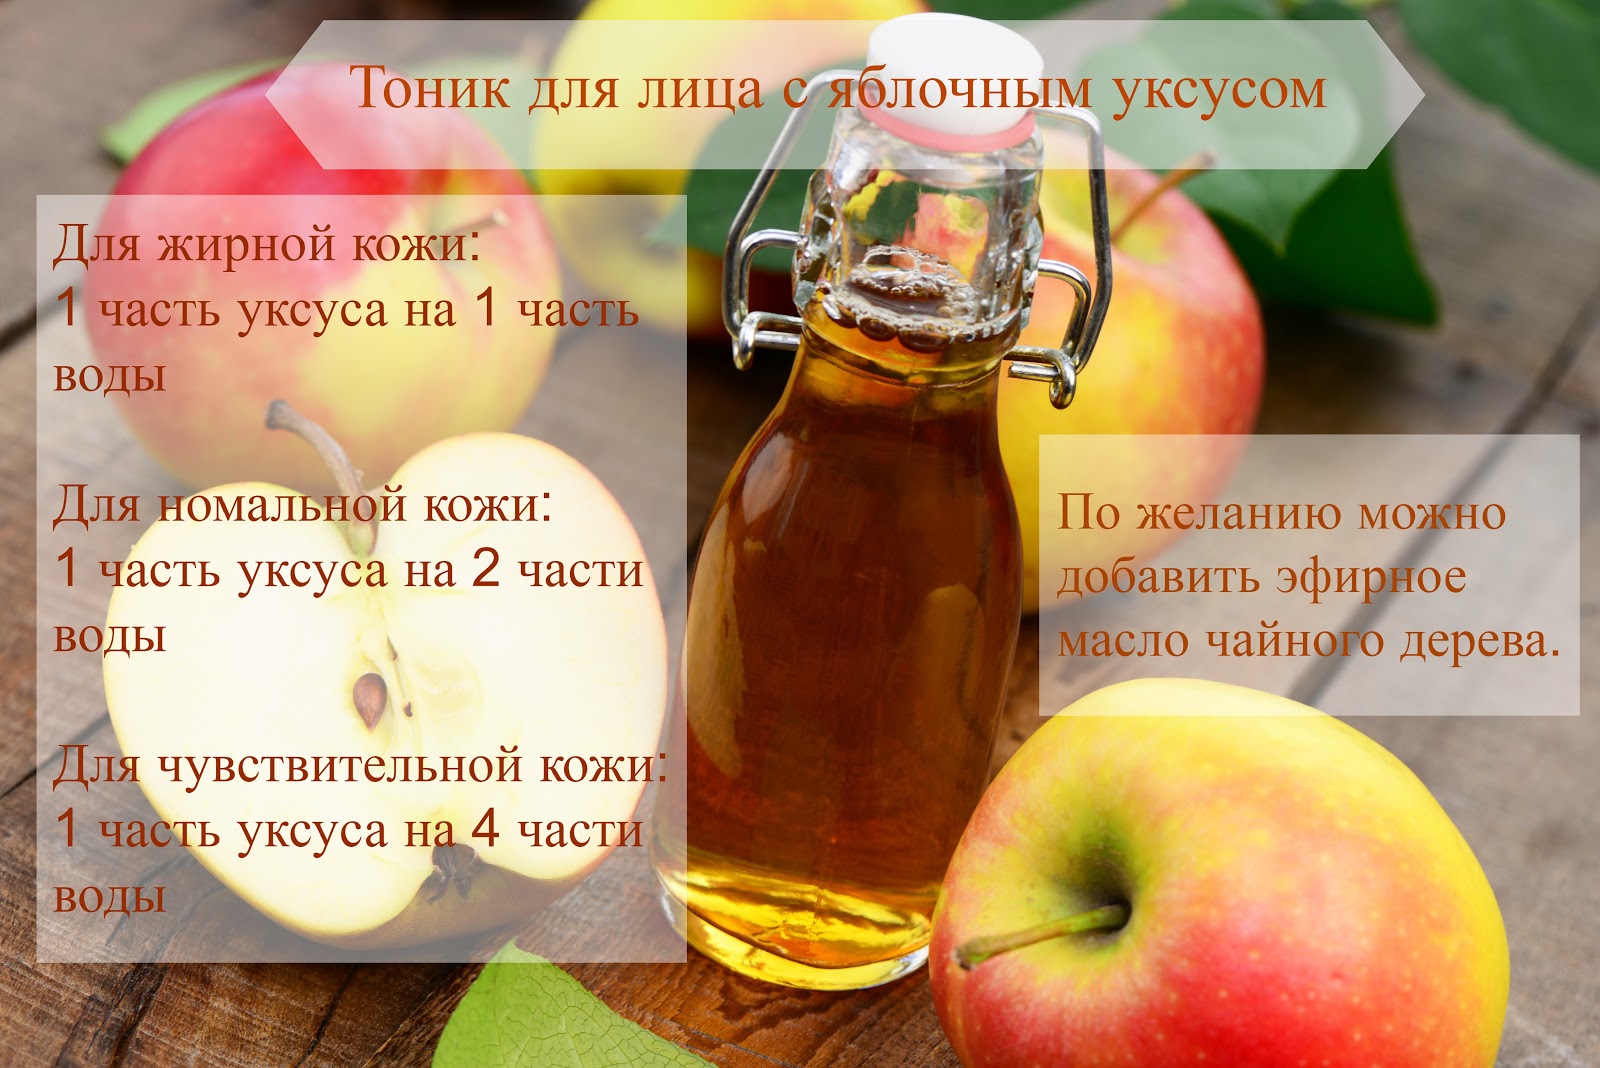 Яблочный уксус для похудения: польза и вред - помогают ли обертывания и можно ли его употреблять, как пить с медом и содой, как принимать?